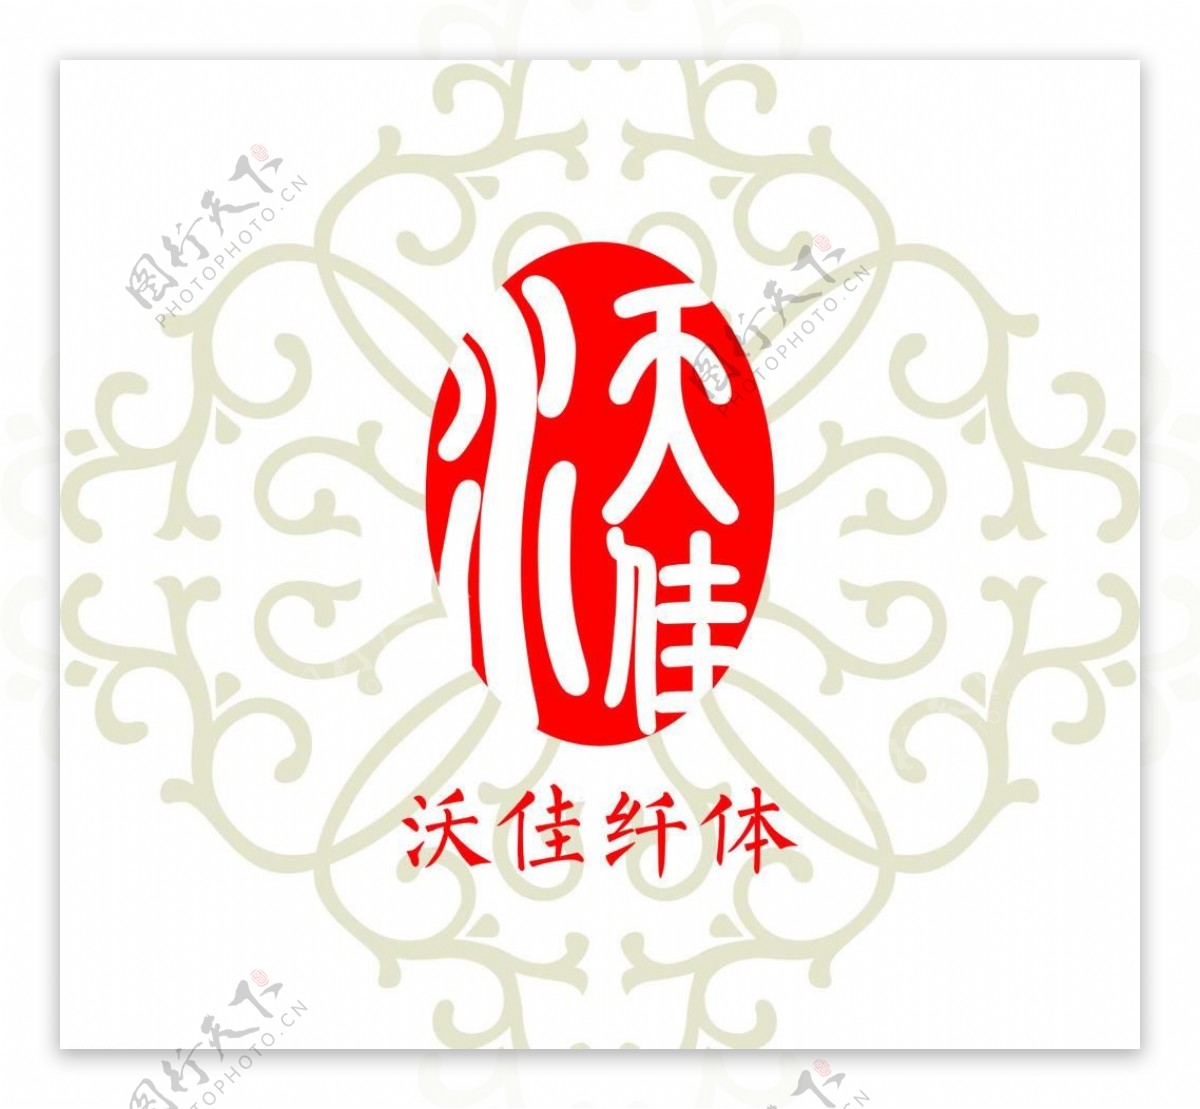 沃佳纤体logo图片